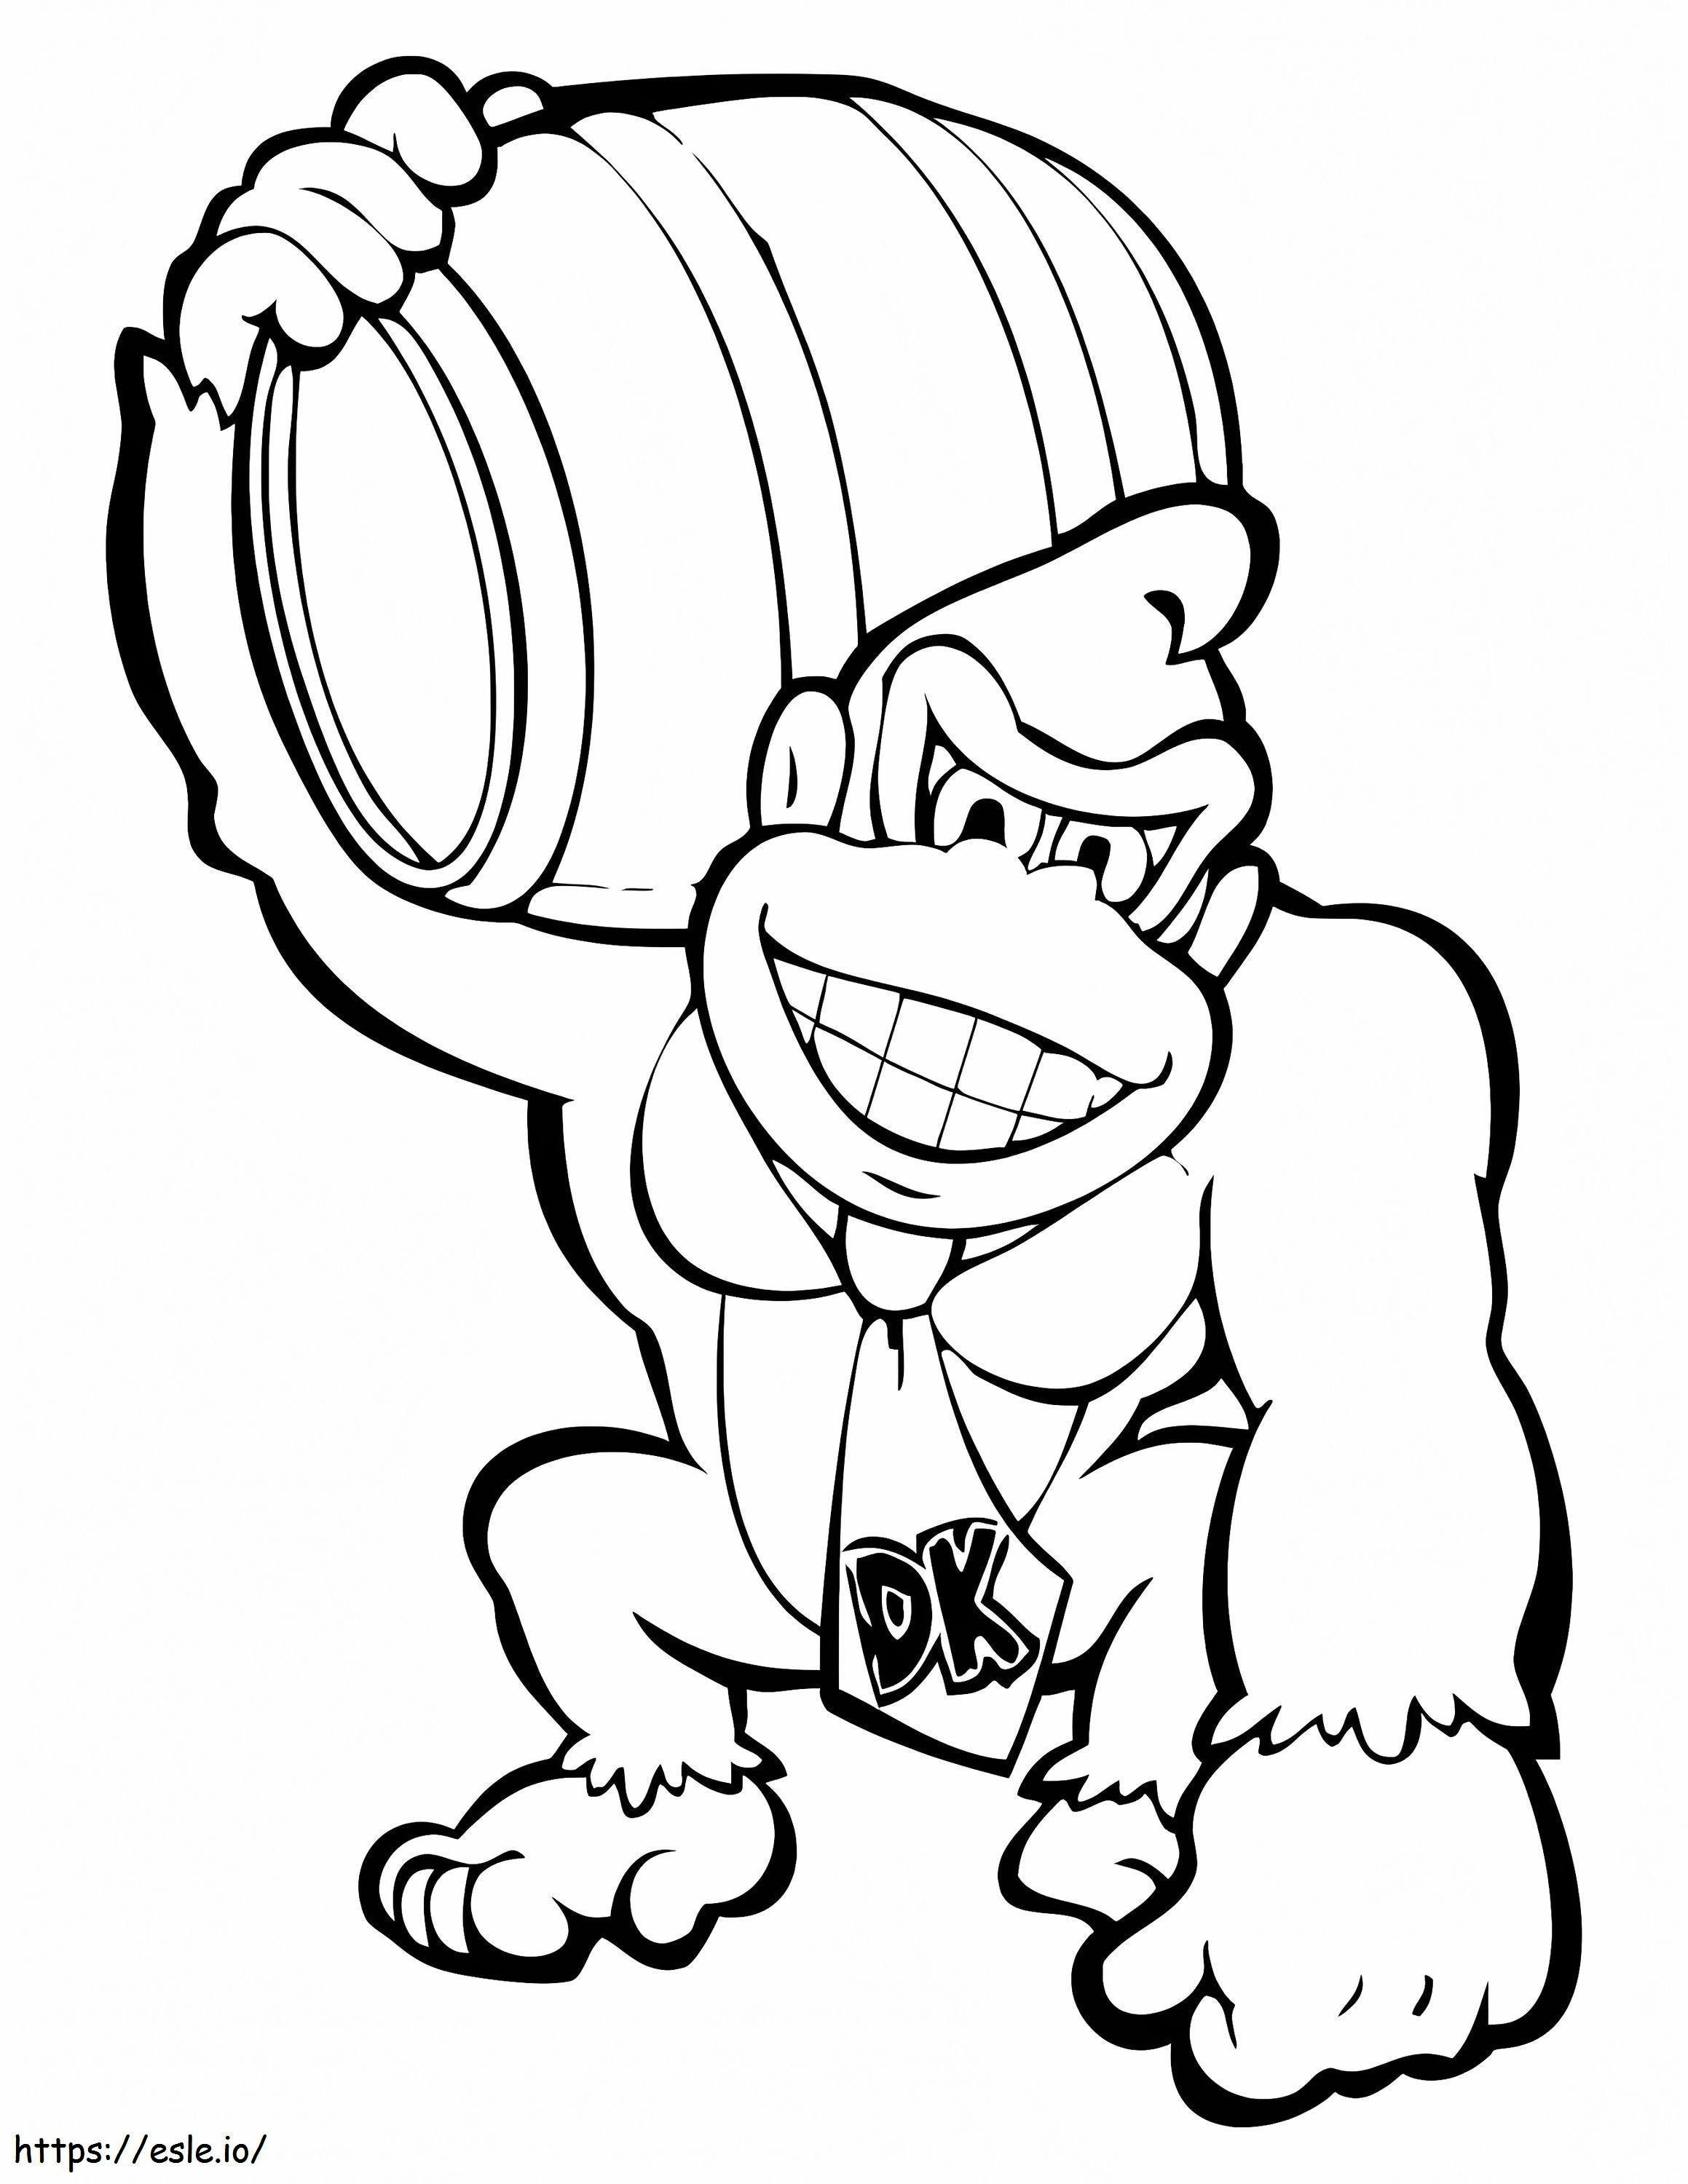 Mario Donkey Kong coloring page